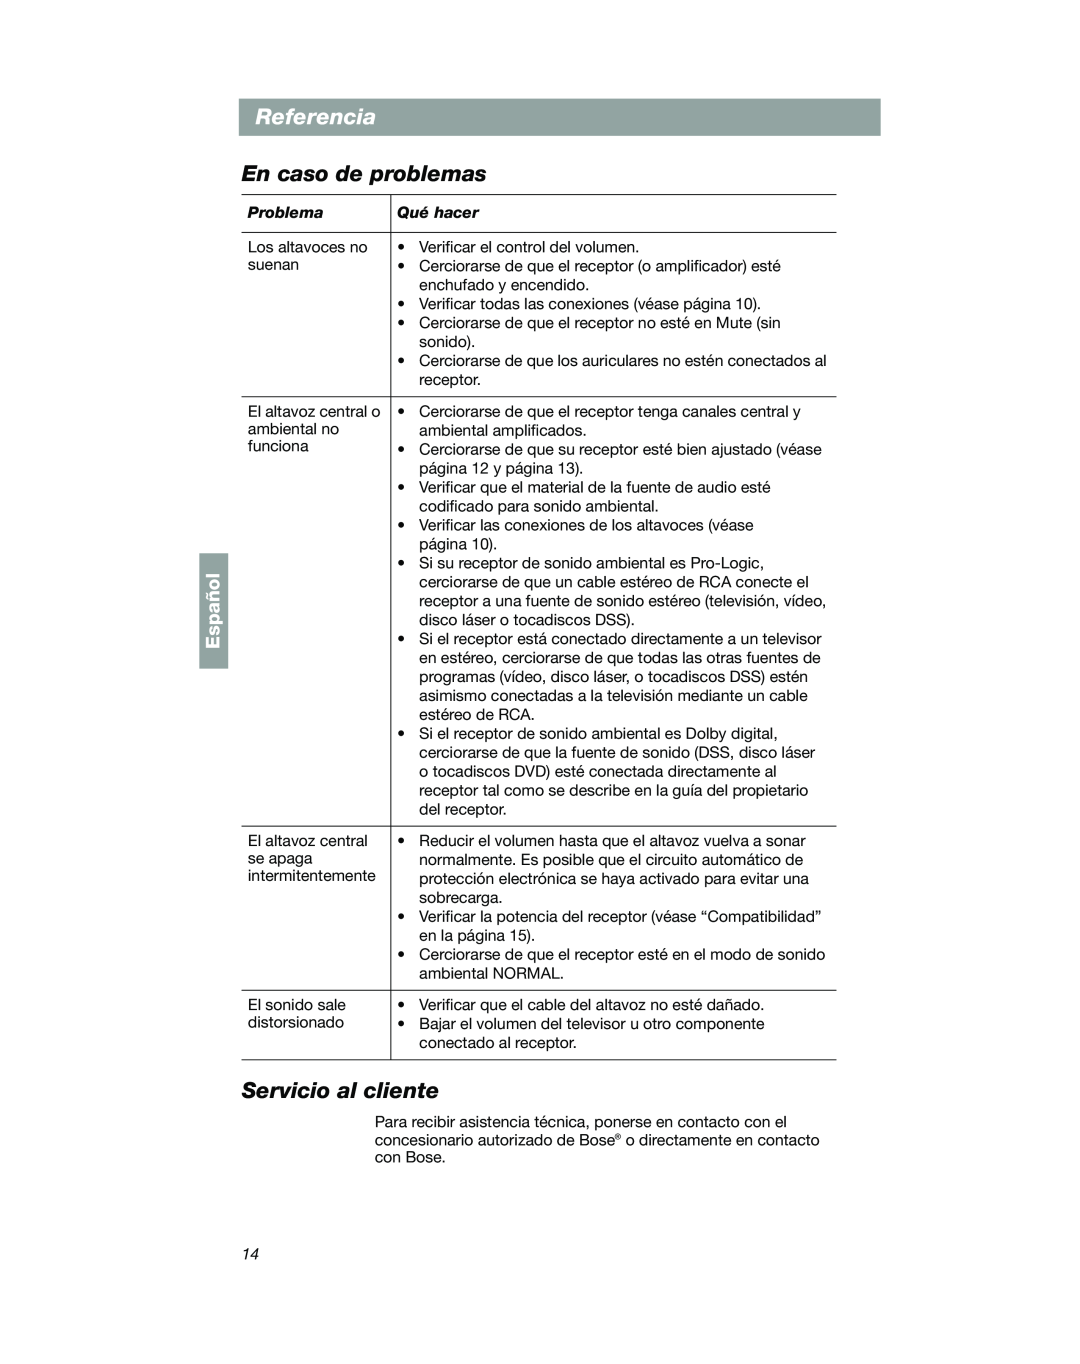 Bose VCS-10 manual Referencia, En caso de problemas, Servicio al cliente, Español 